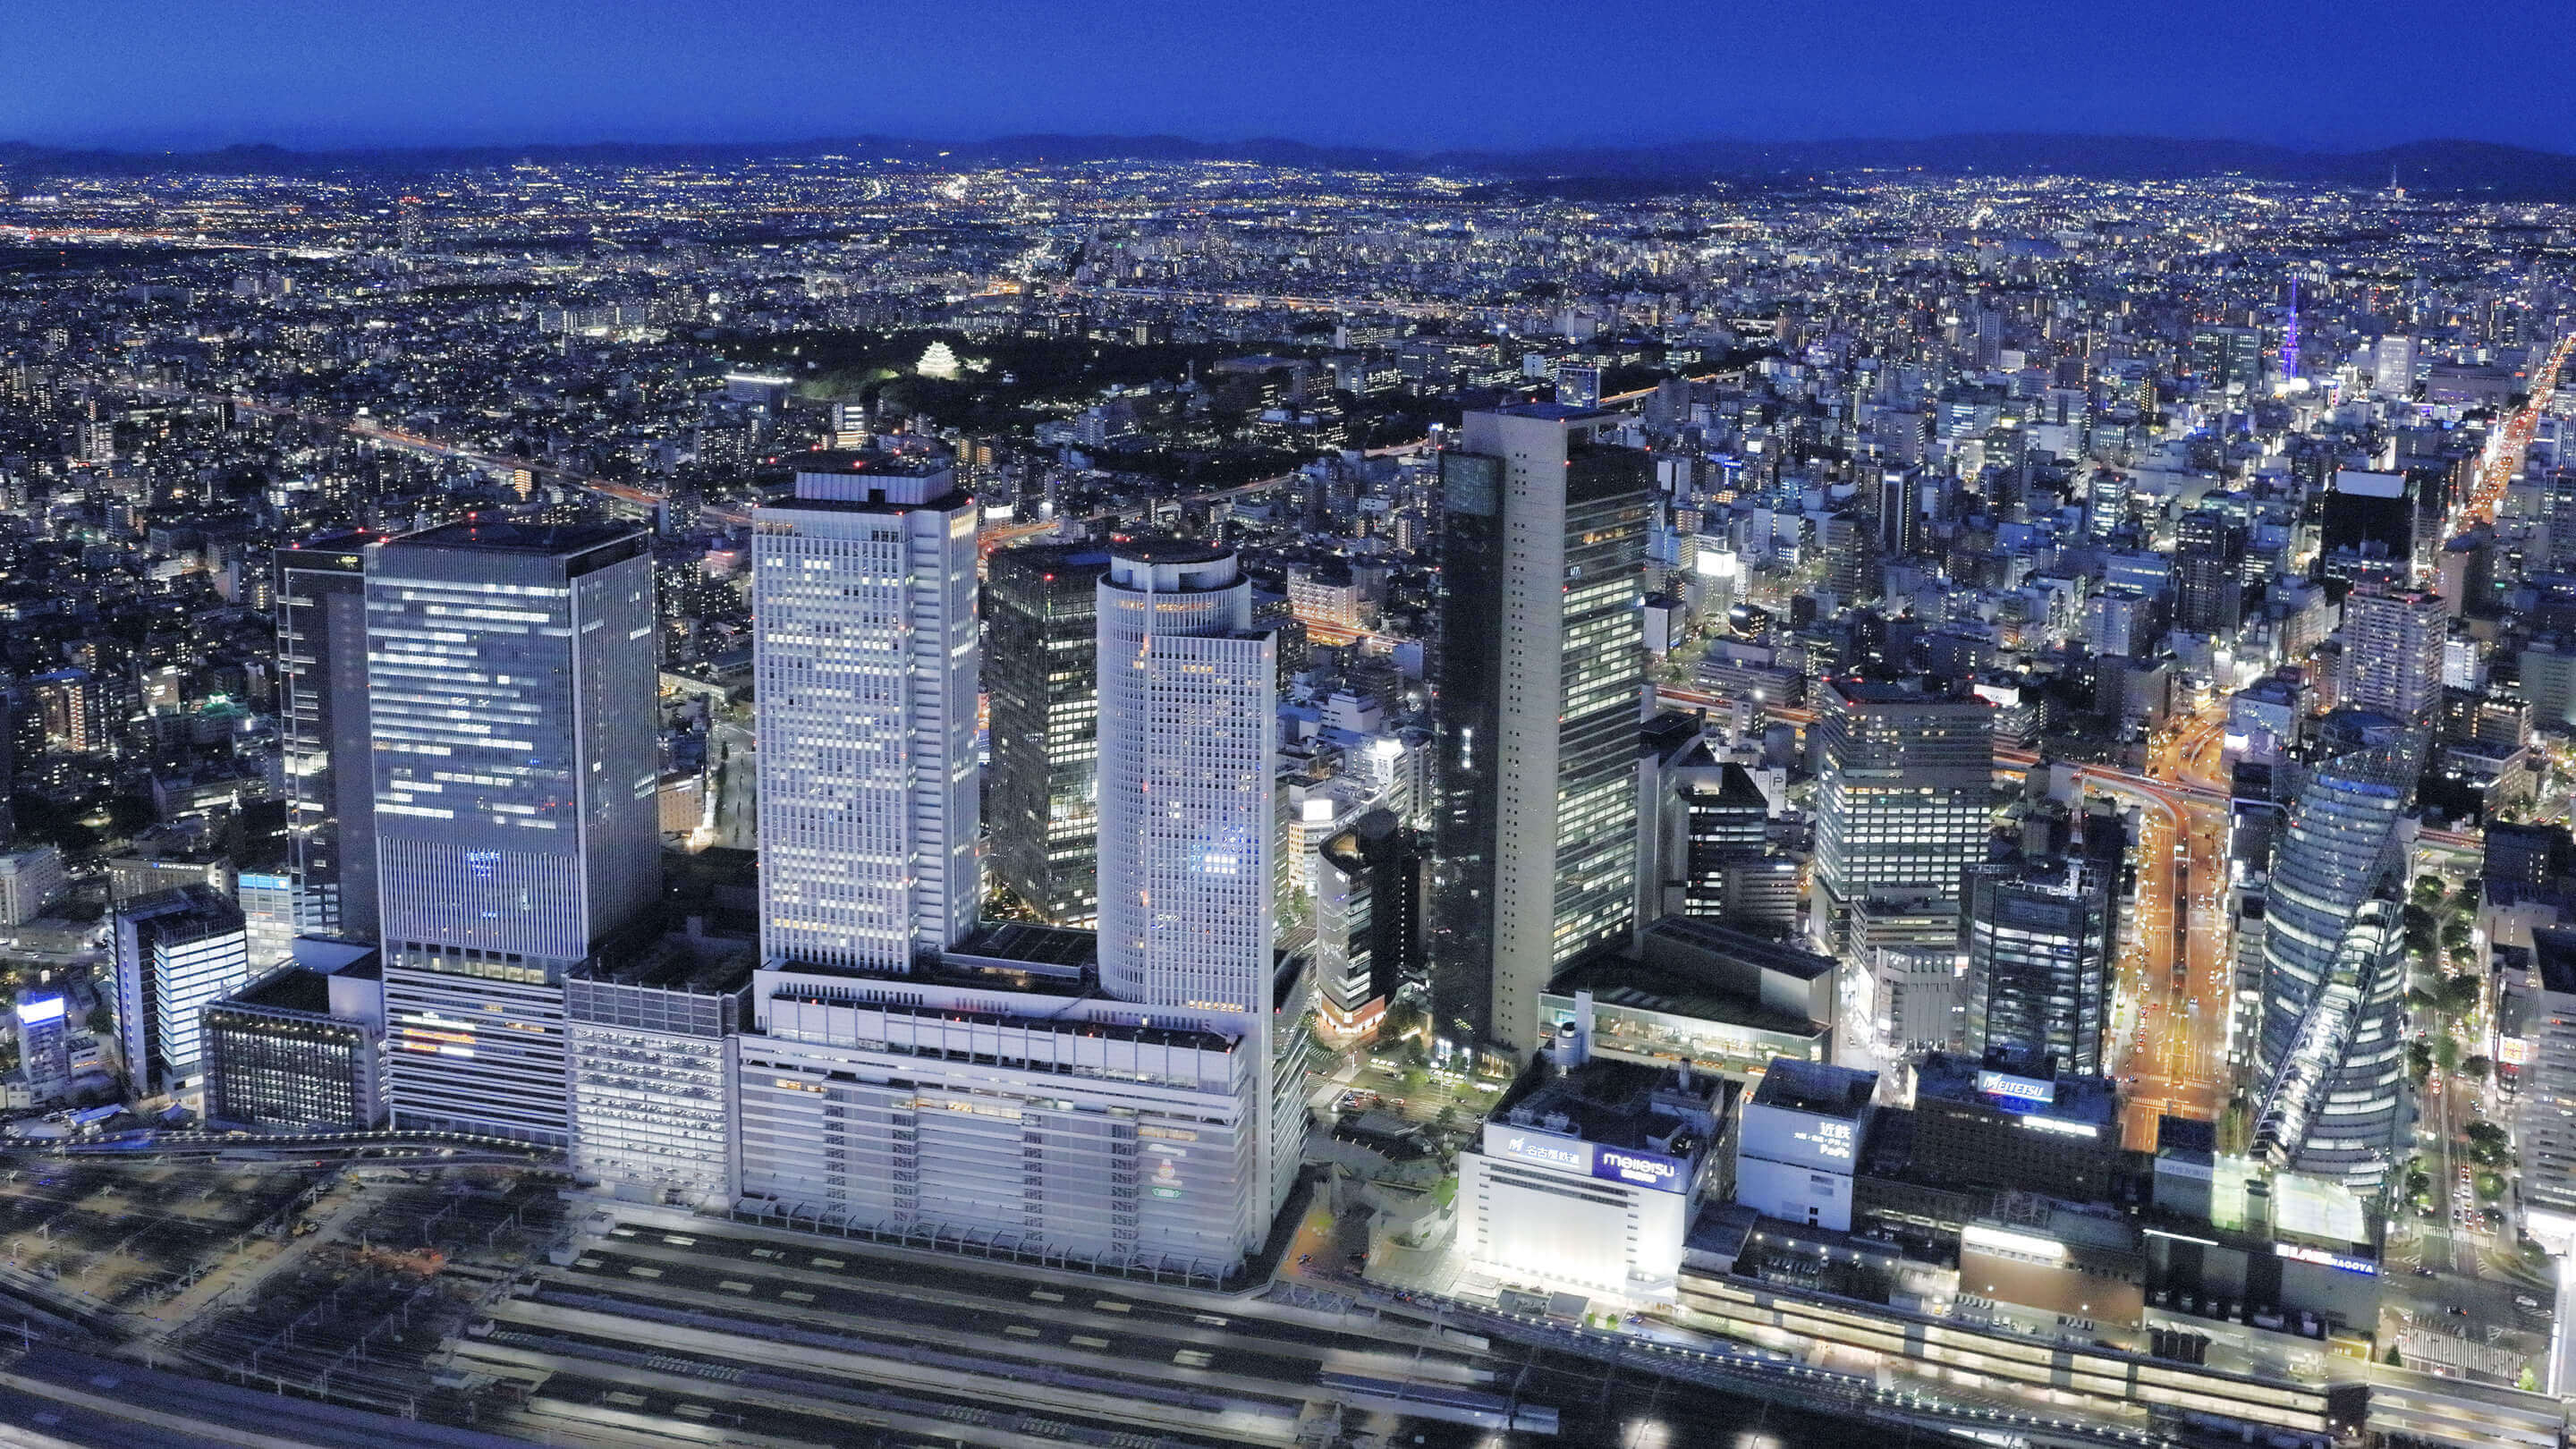 公式 Nagoya The Tower 再開発ページ 地上42階 名古屋 駅最寄りの最高層タワーレジデンス